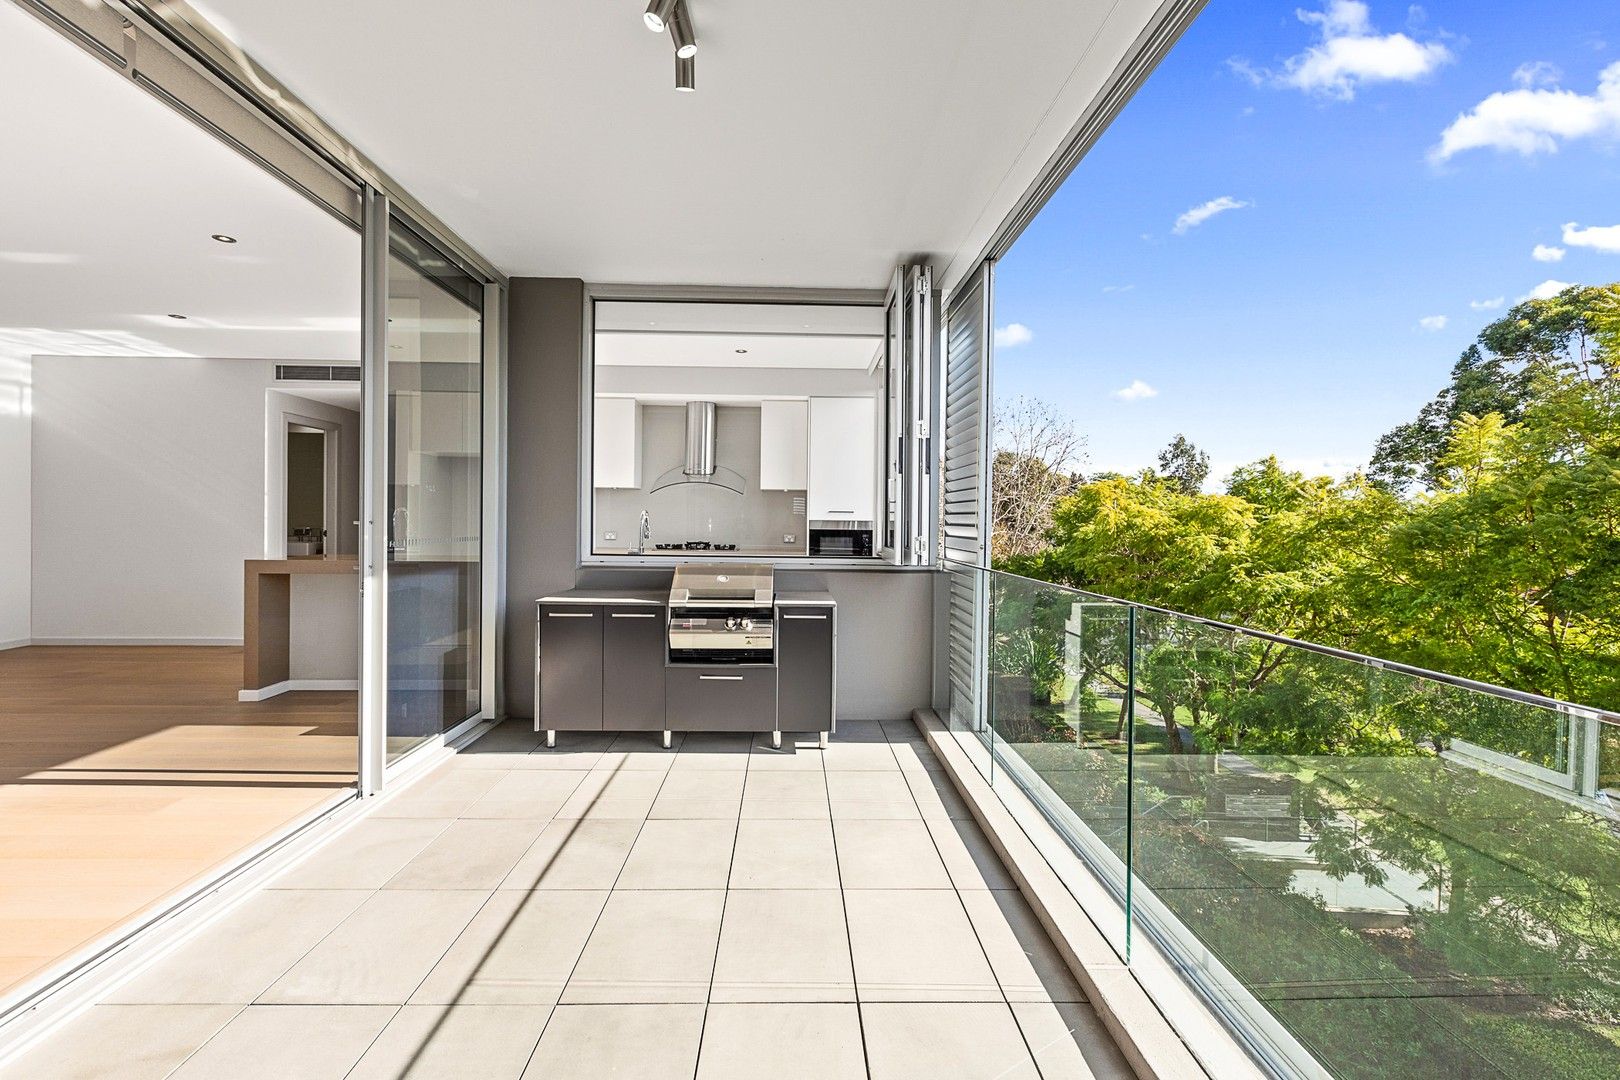 3 bedrooms Apartment / Unit / Flat in 10/17 Powell Street KILLARA NSW, 2071